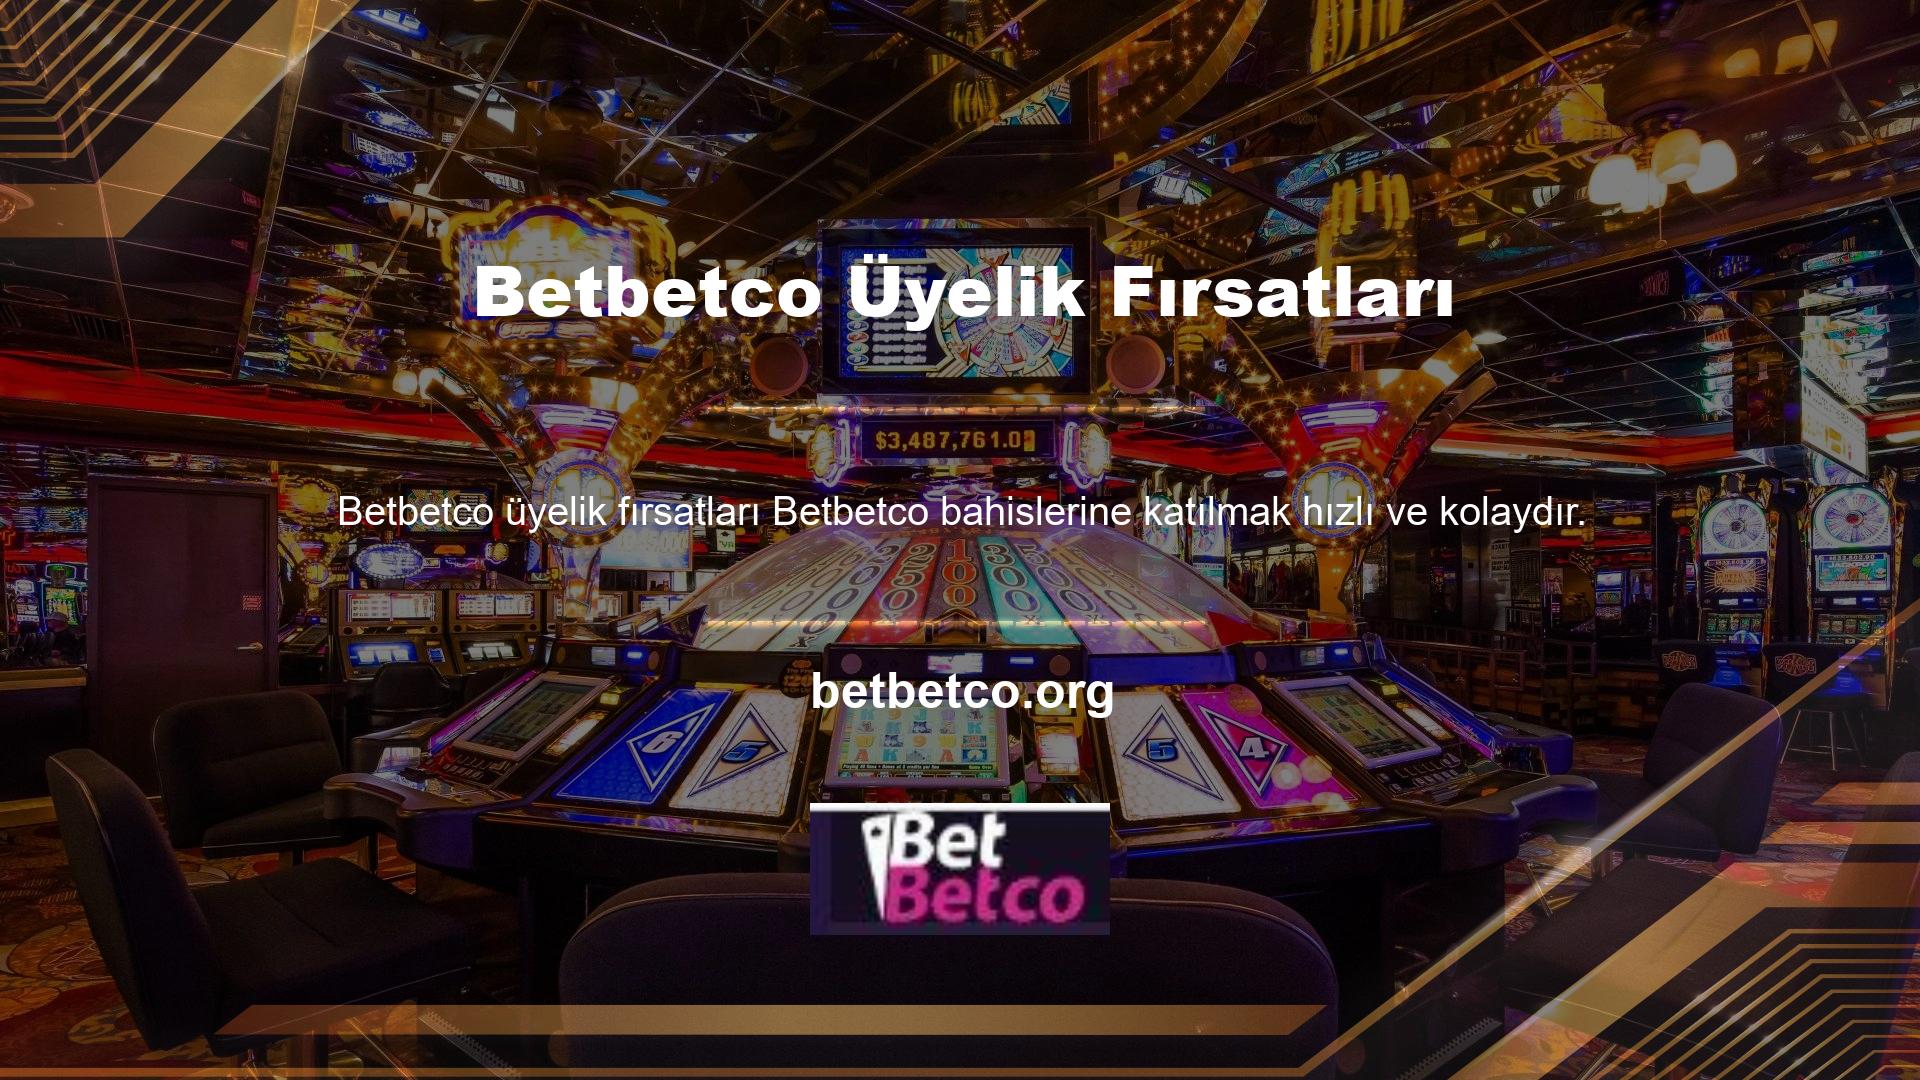 Betbetco casino sitelerinin birçok faydasını duydu ve onlara katılmak istedi